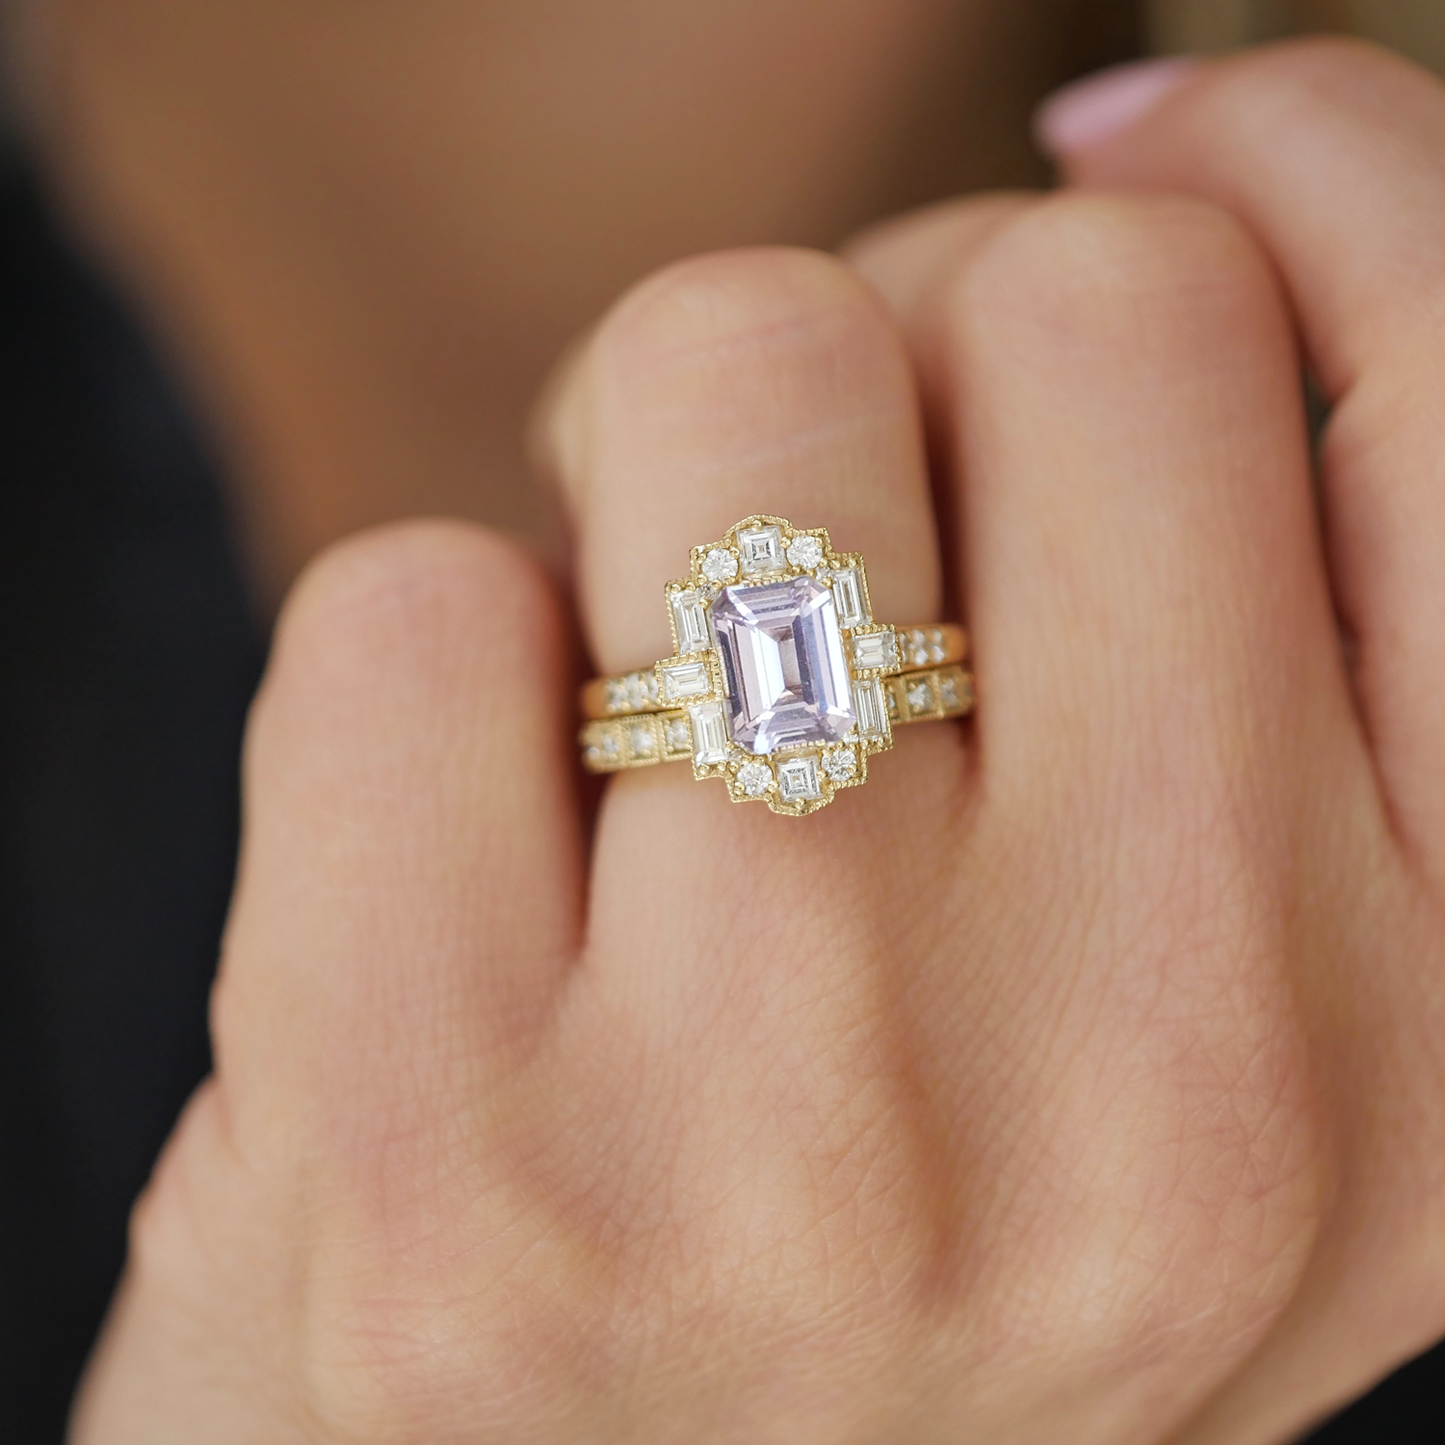 Lavender Emerald Cut Sapphire Deco Halo Diamond Ring